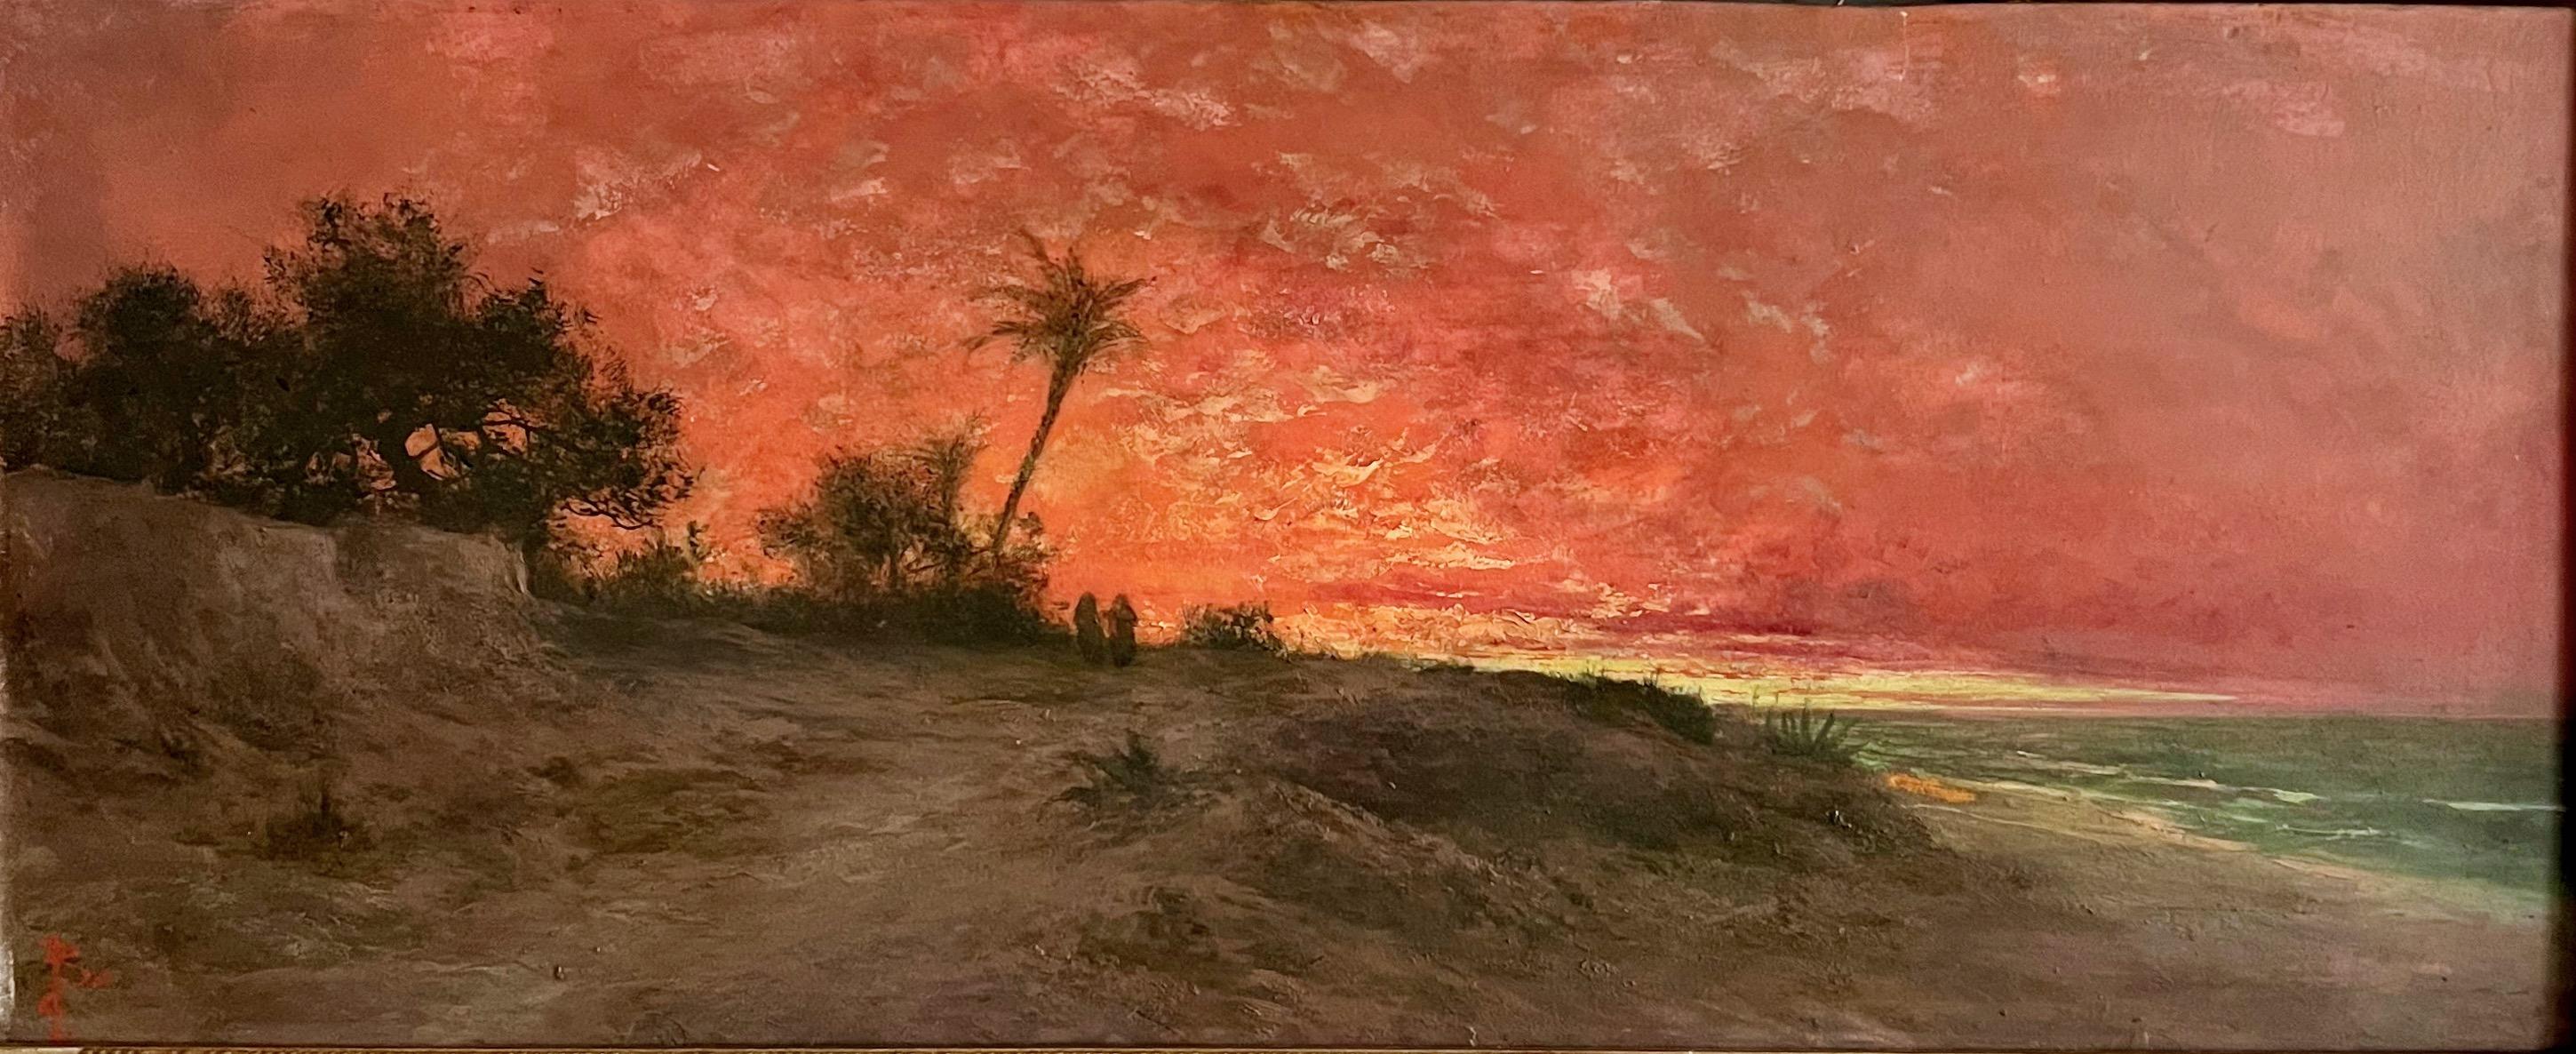 Unknown Landscape Painting – Sonnenuntergang in einer orientalischen Landschaft am Meer. 